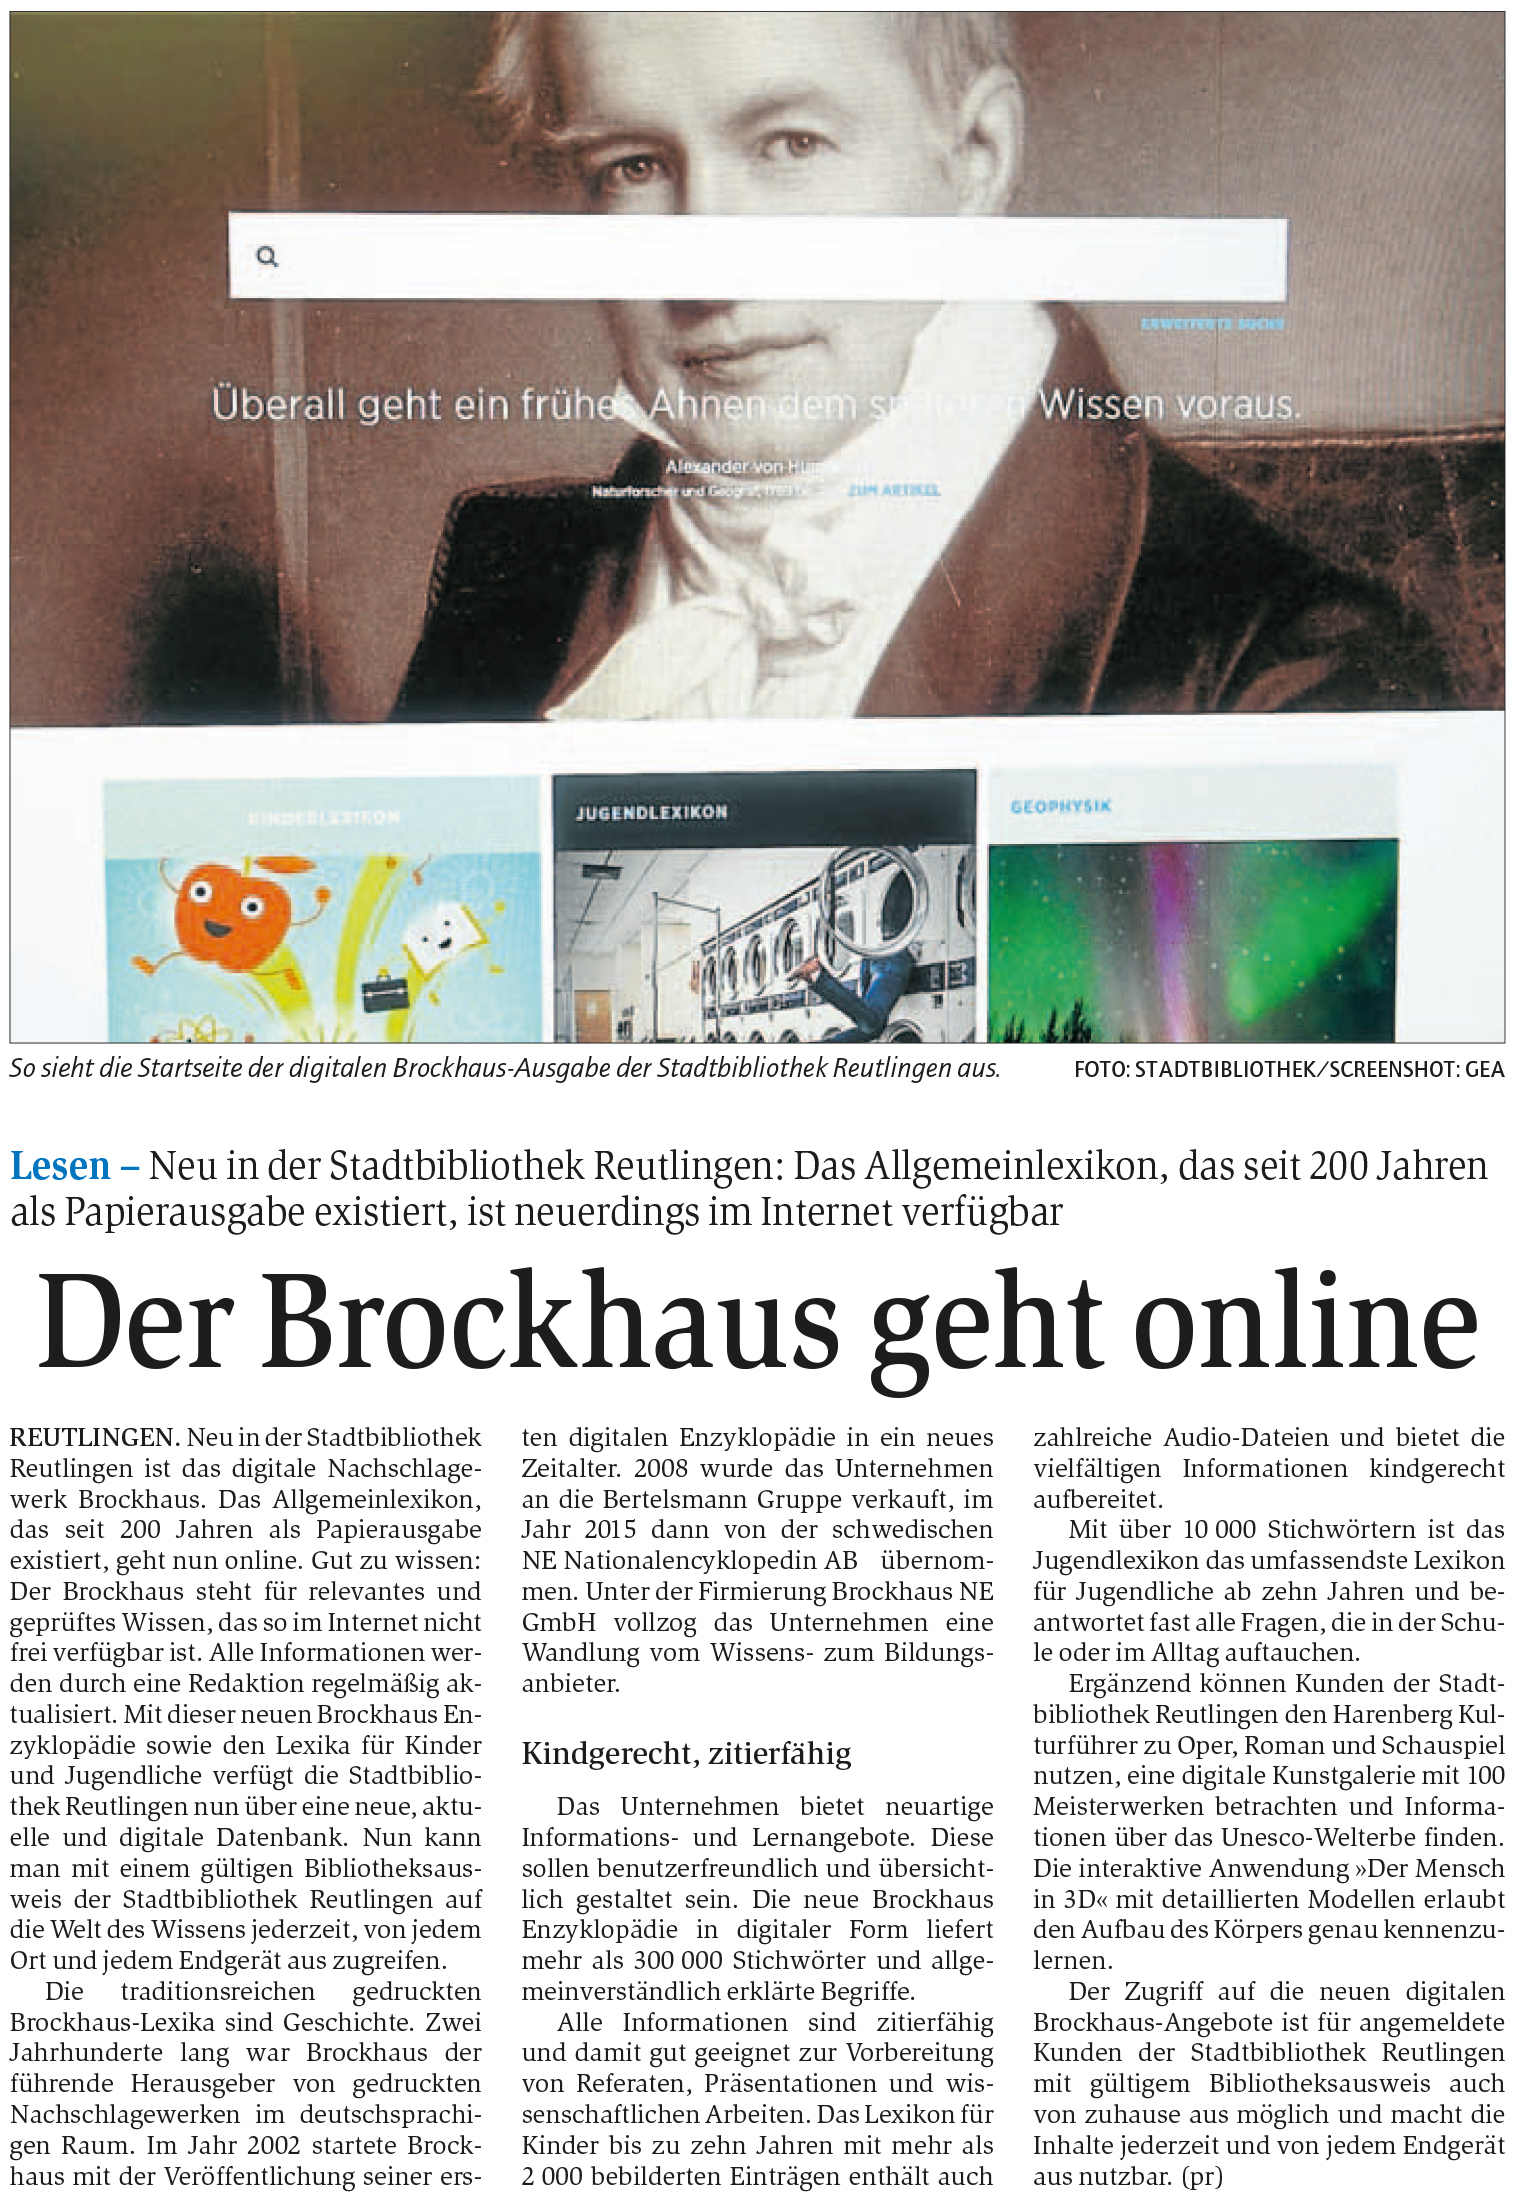 Der Brockhaus geht online